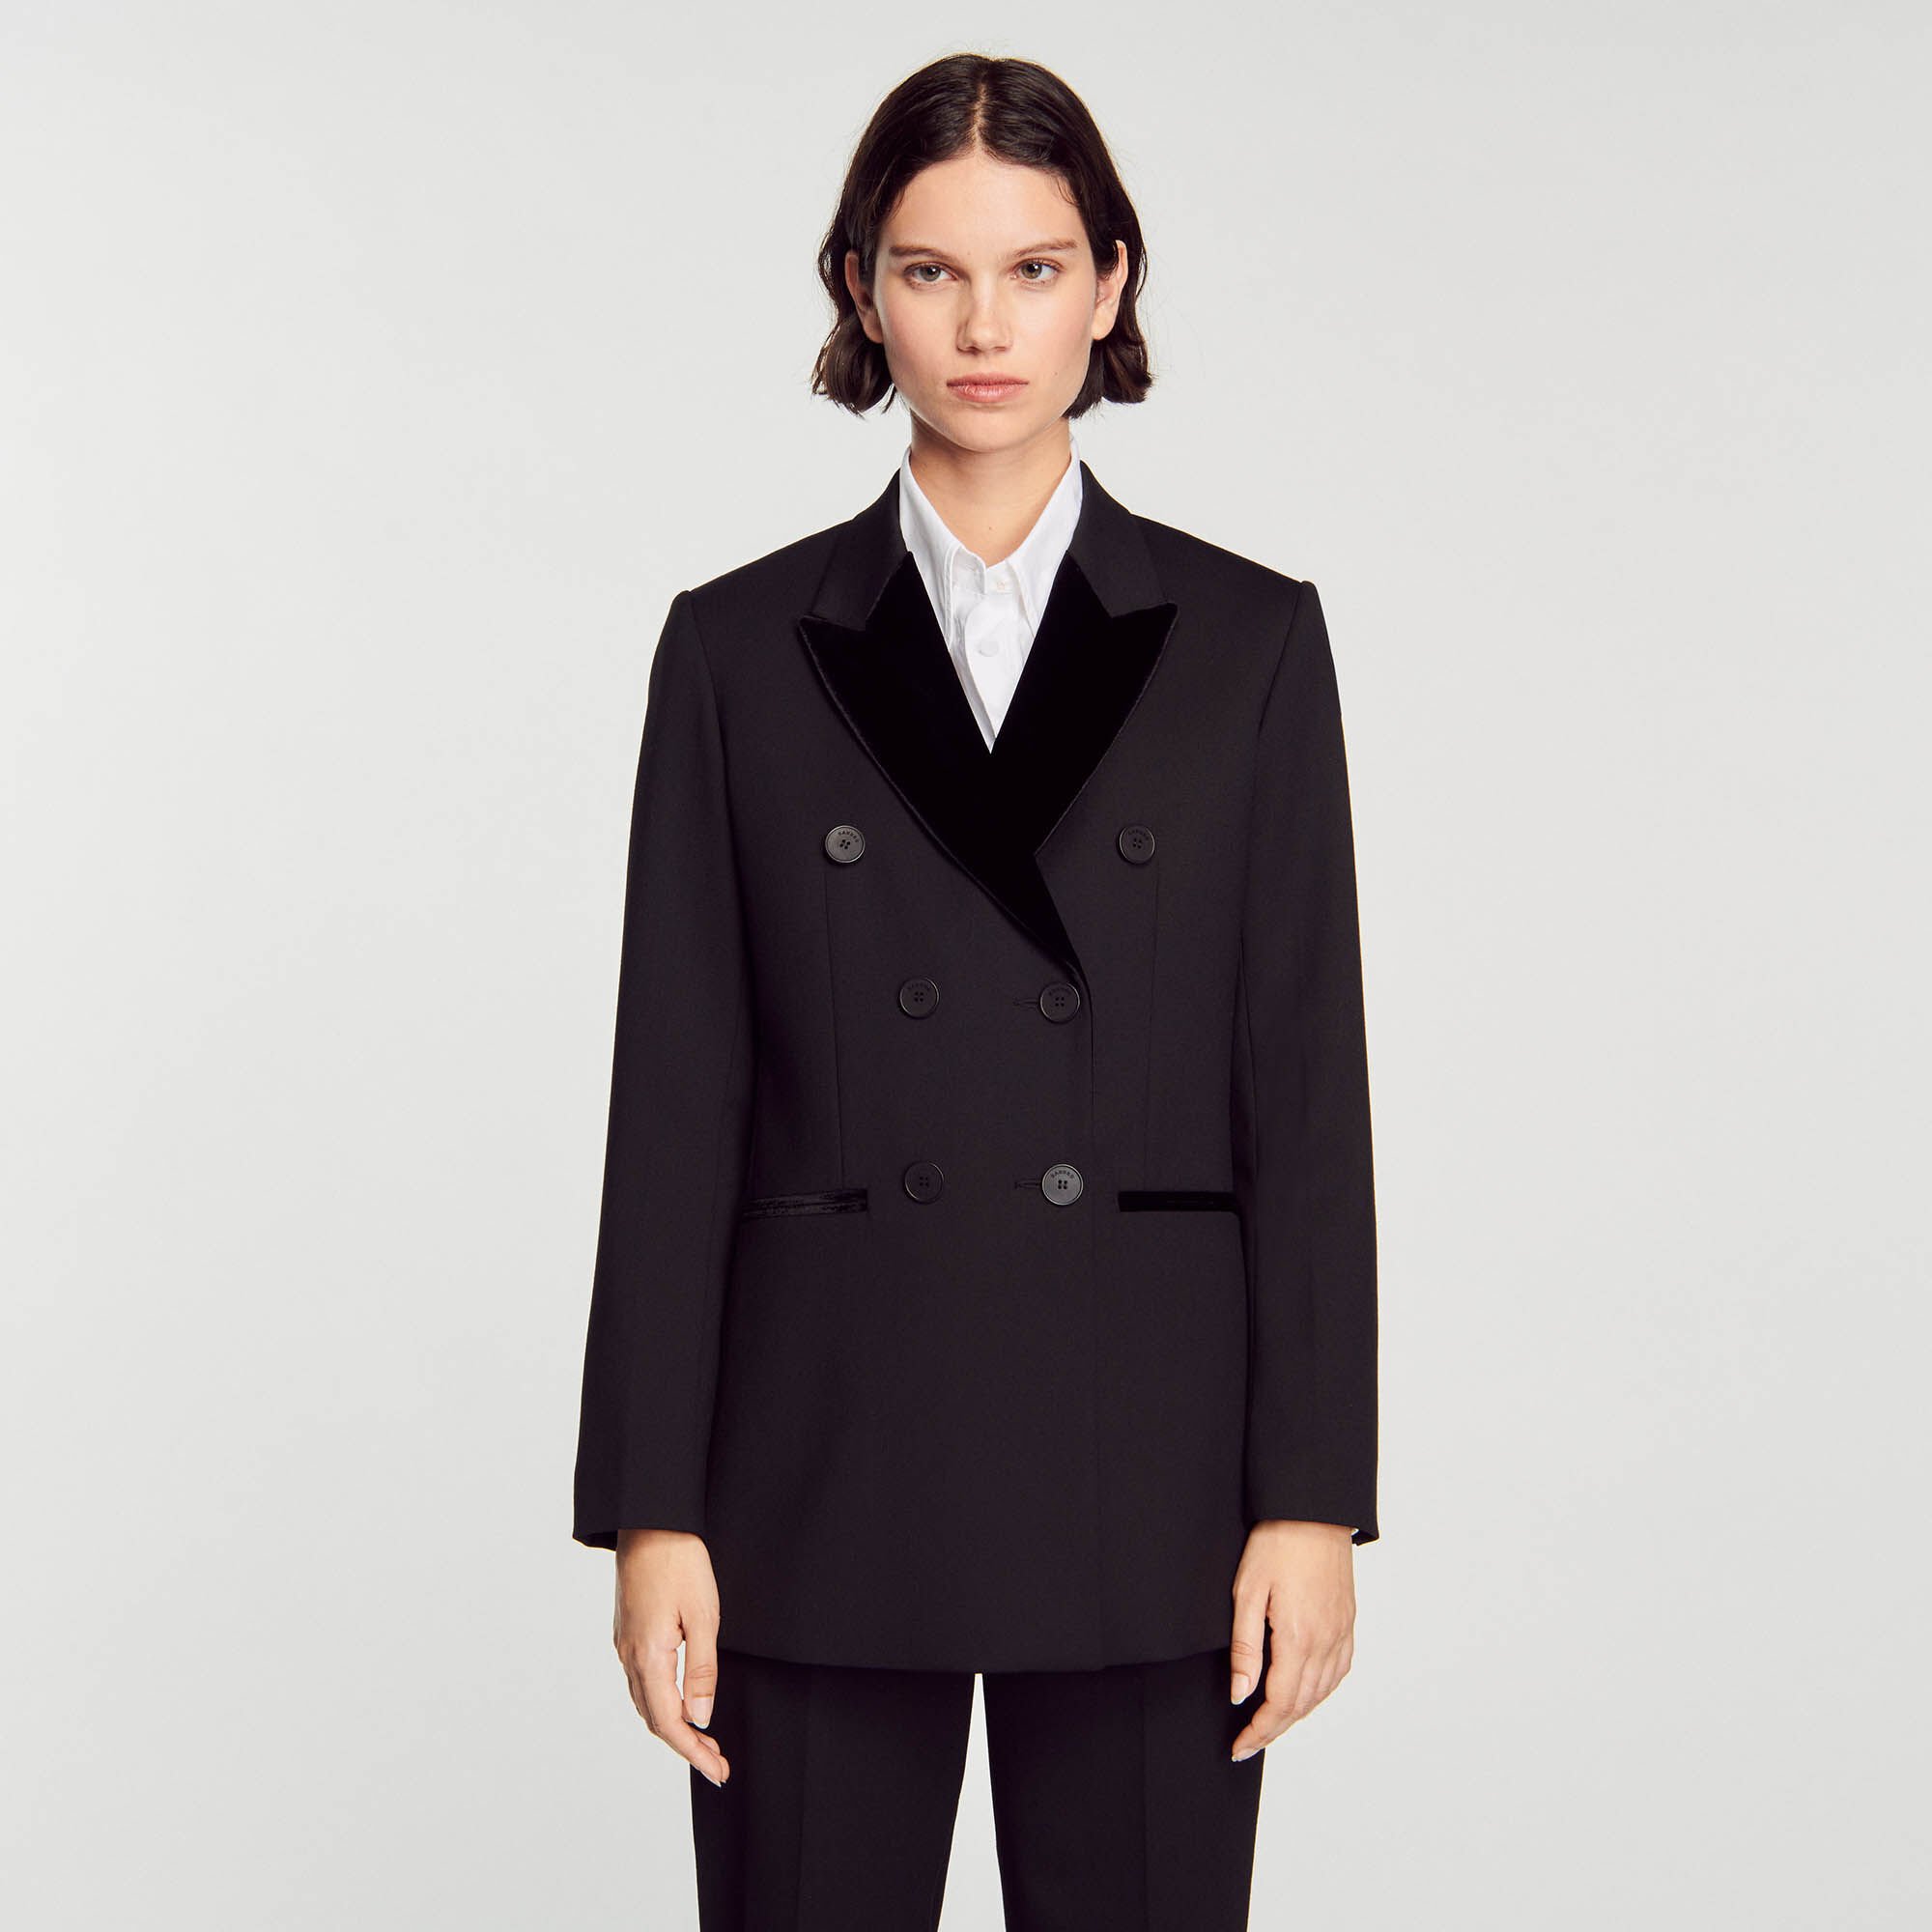 Tailored jacket Black / Gray | Sandro Paris